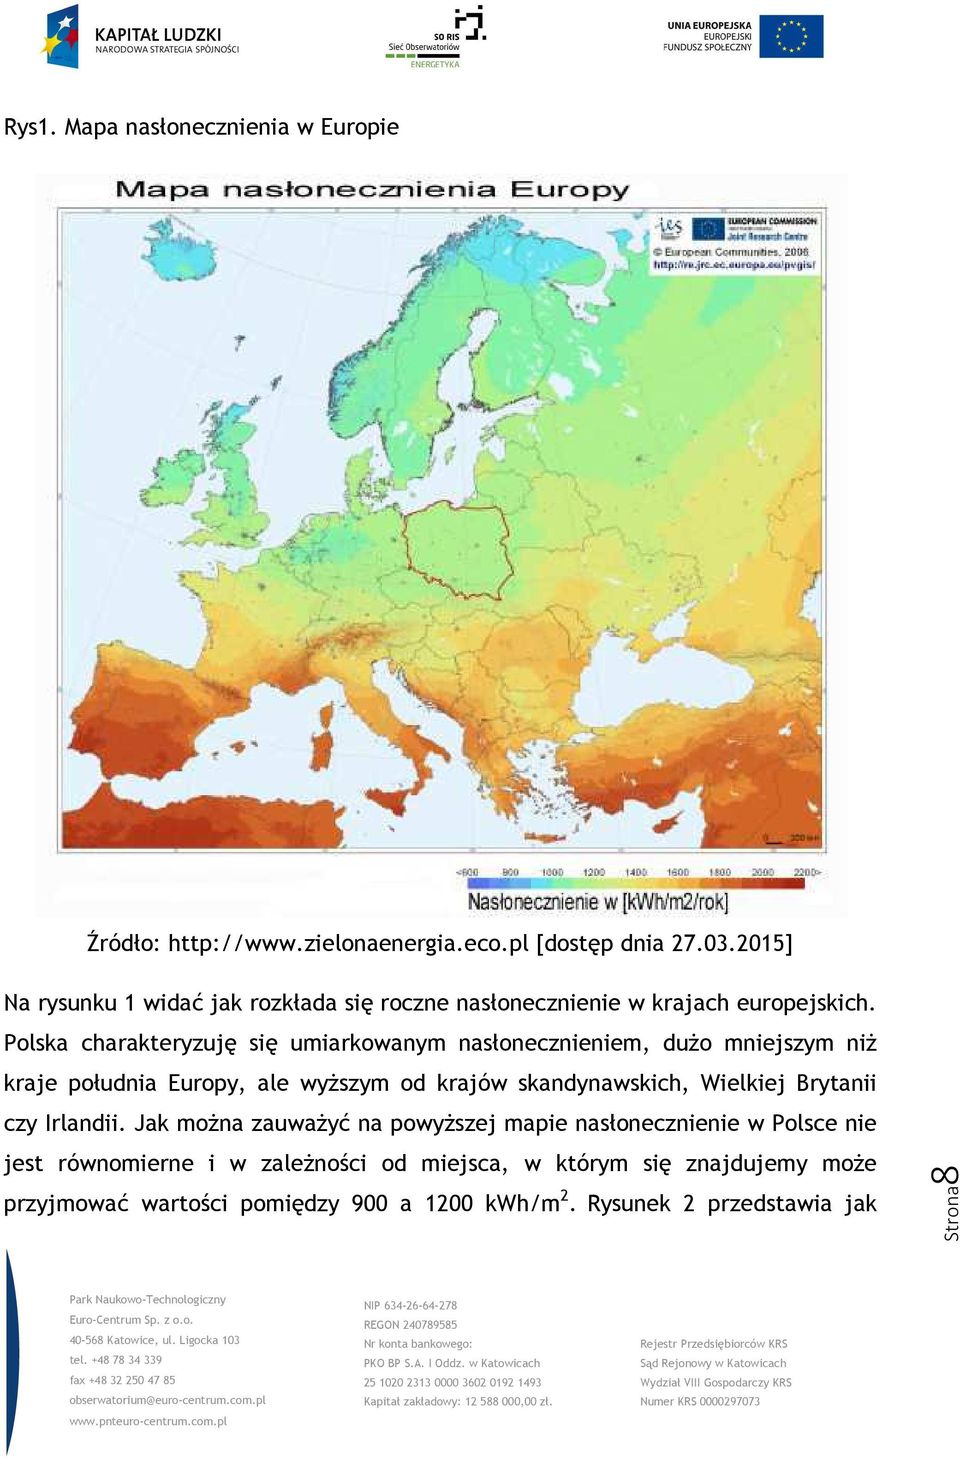 Polska charakteryzuję się umiarkowanym nasłonecznieniem, dużo mniejszym niż kraje południa Europy, ale wyższym od krajów skandynawskich,